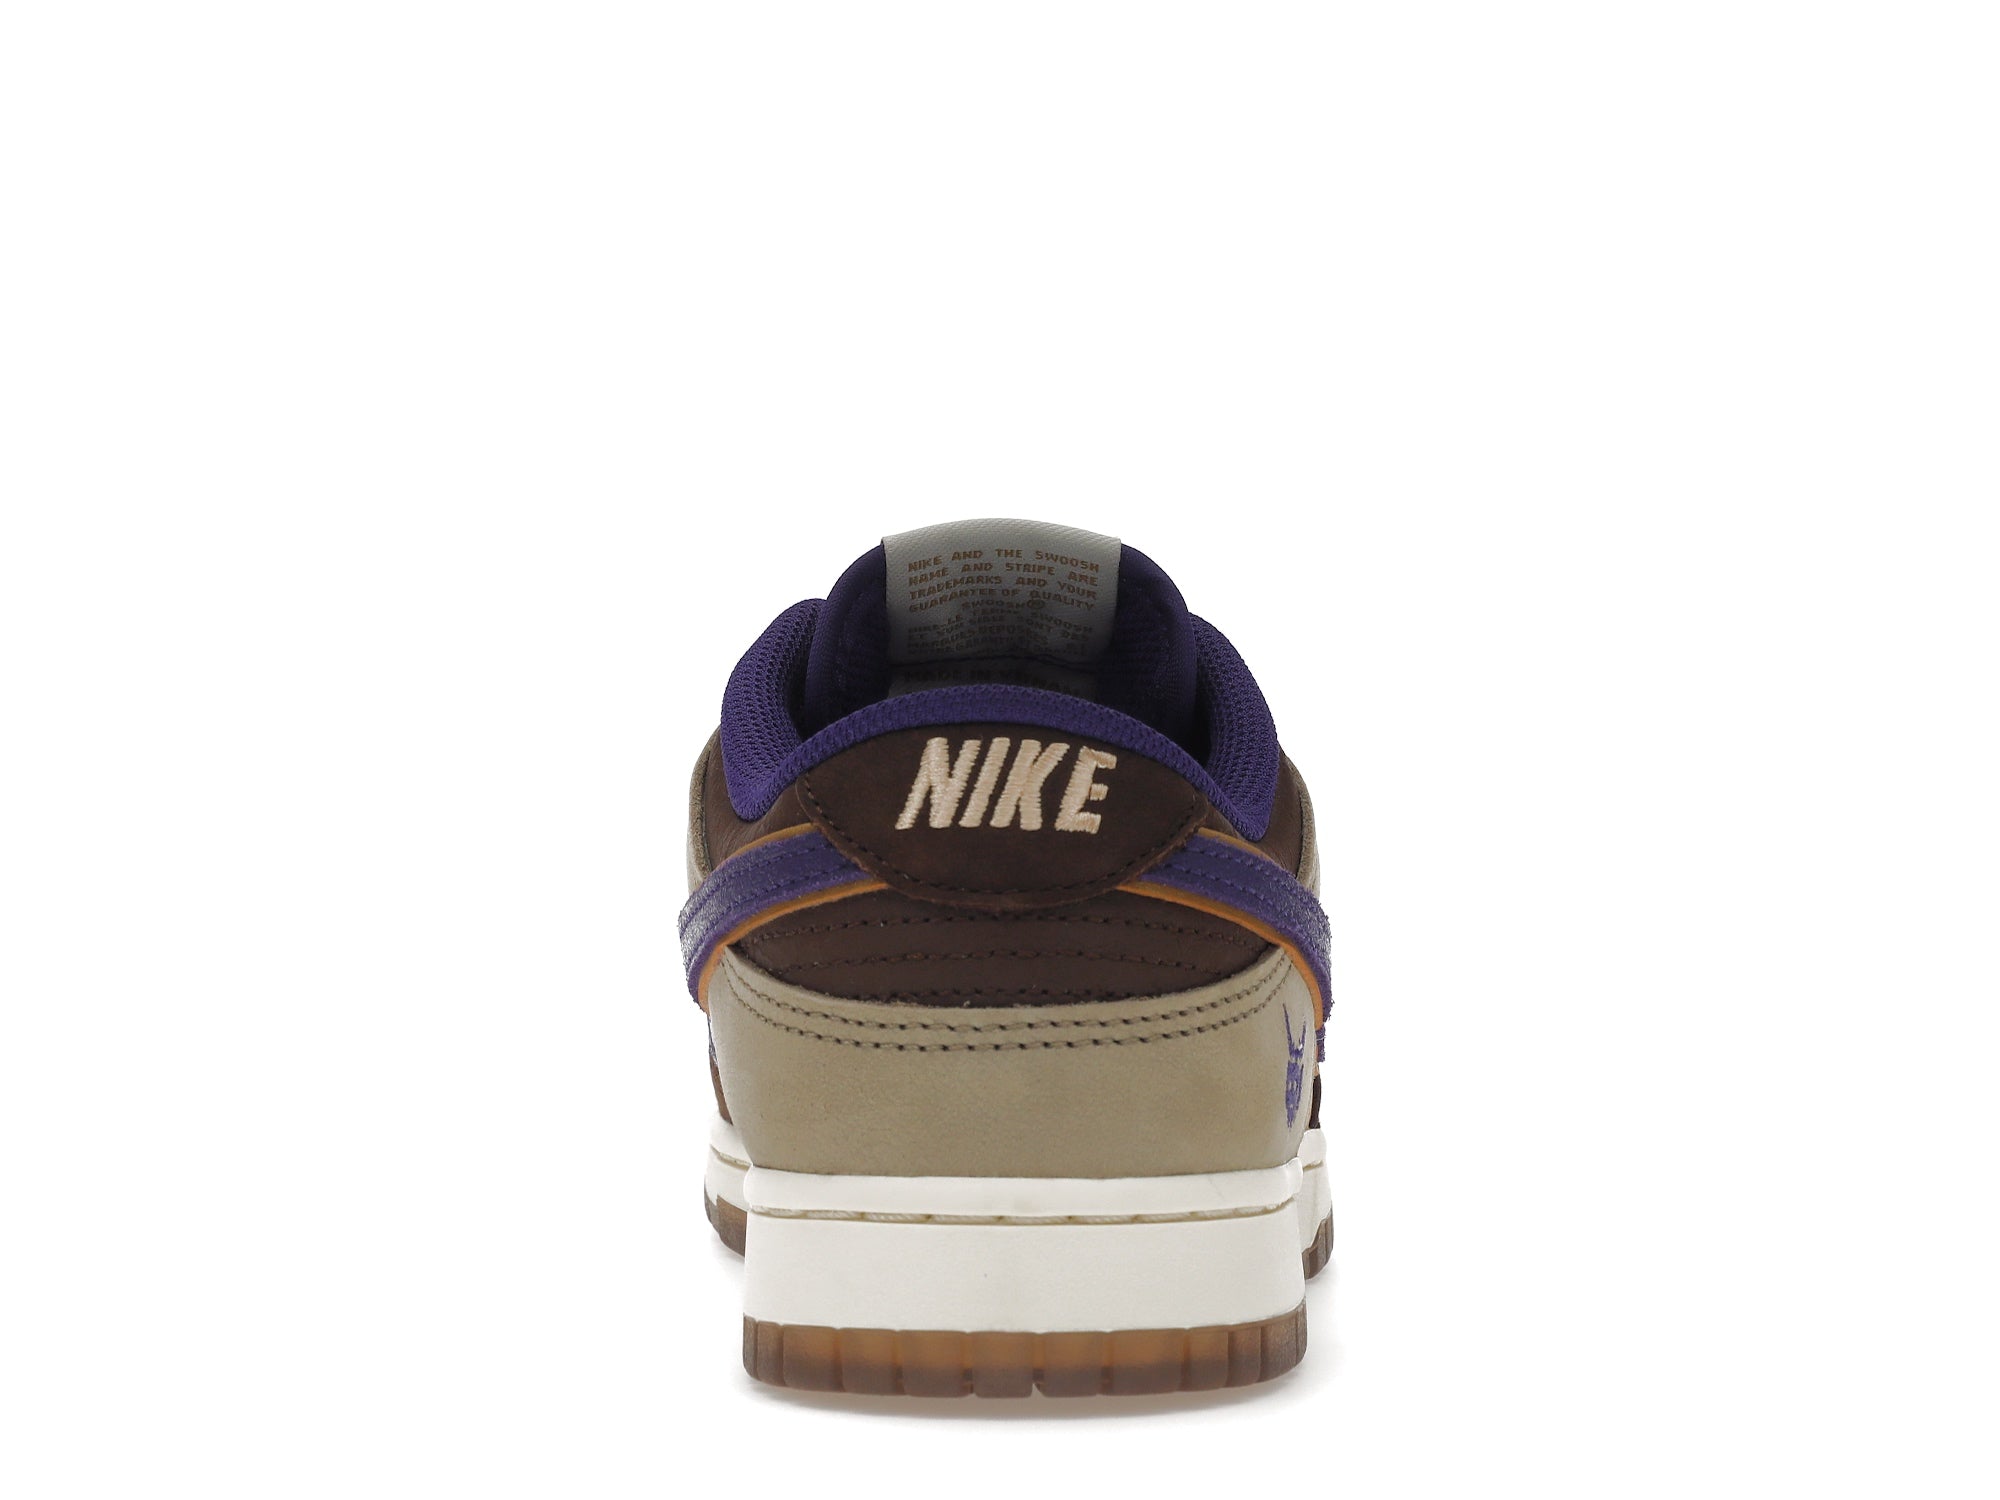 WTS] Nike Dunk Low Setsubun (2022). Size 9 & 9.5. $150. : r